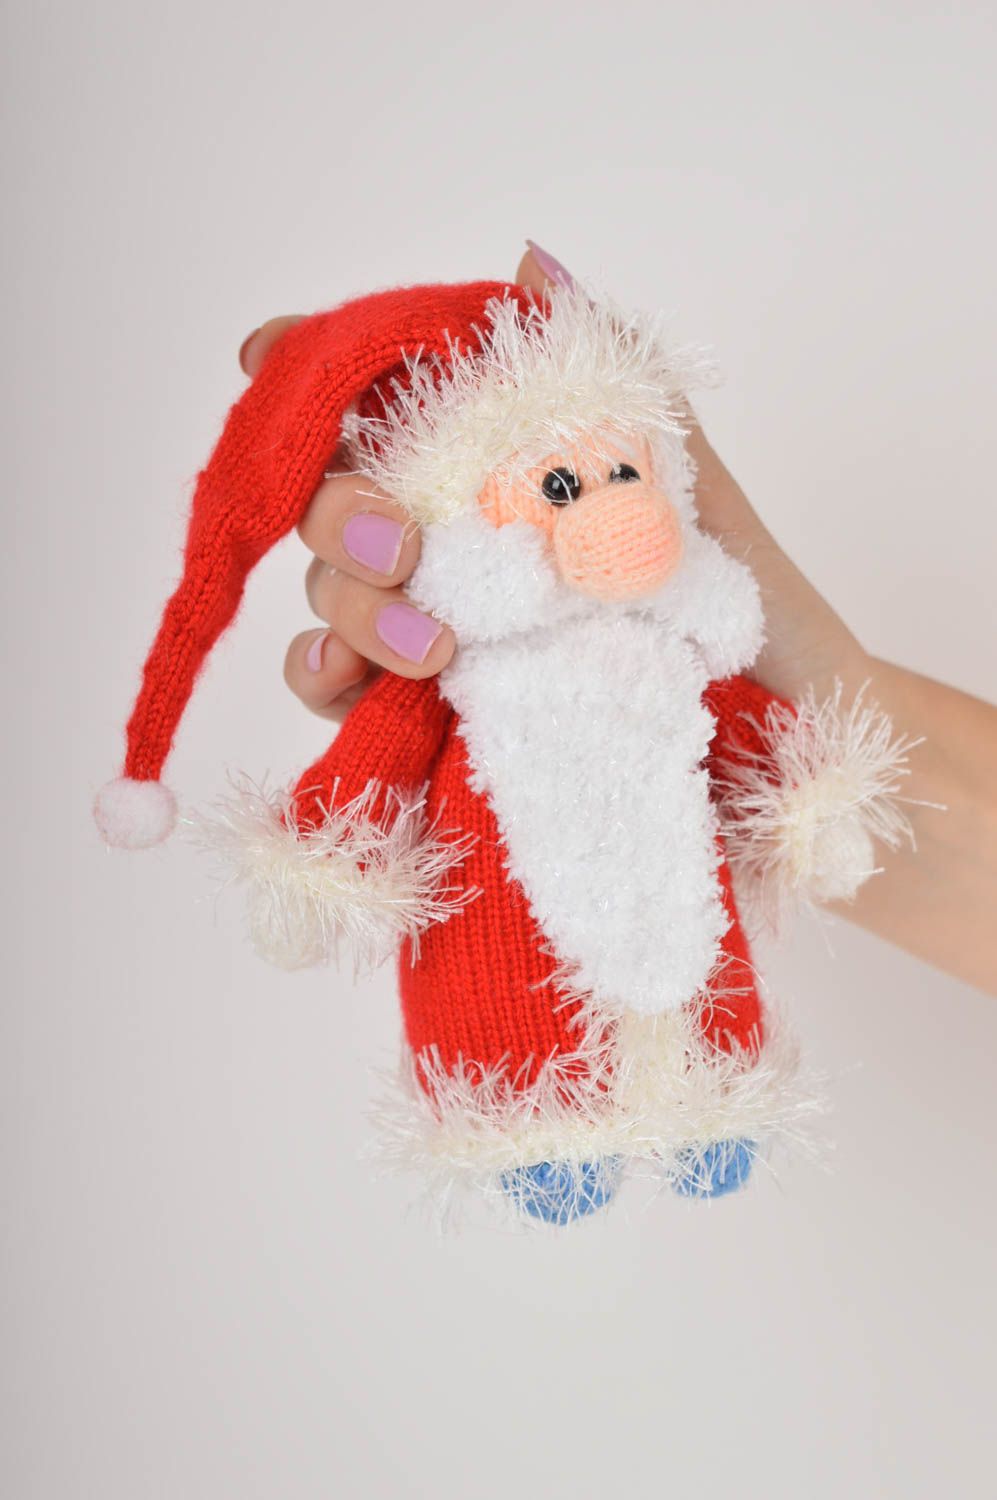 Handmade ausgefallenes Spielzeug Geschenk Idee Weihnachtsmann gehäkelt foto 2